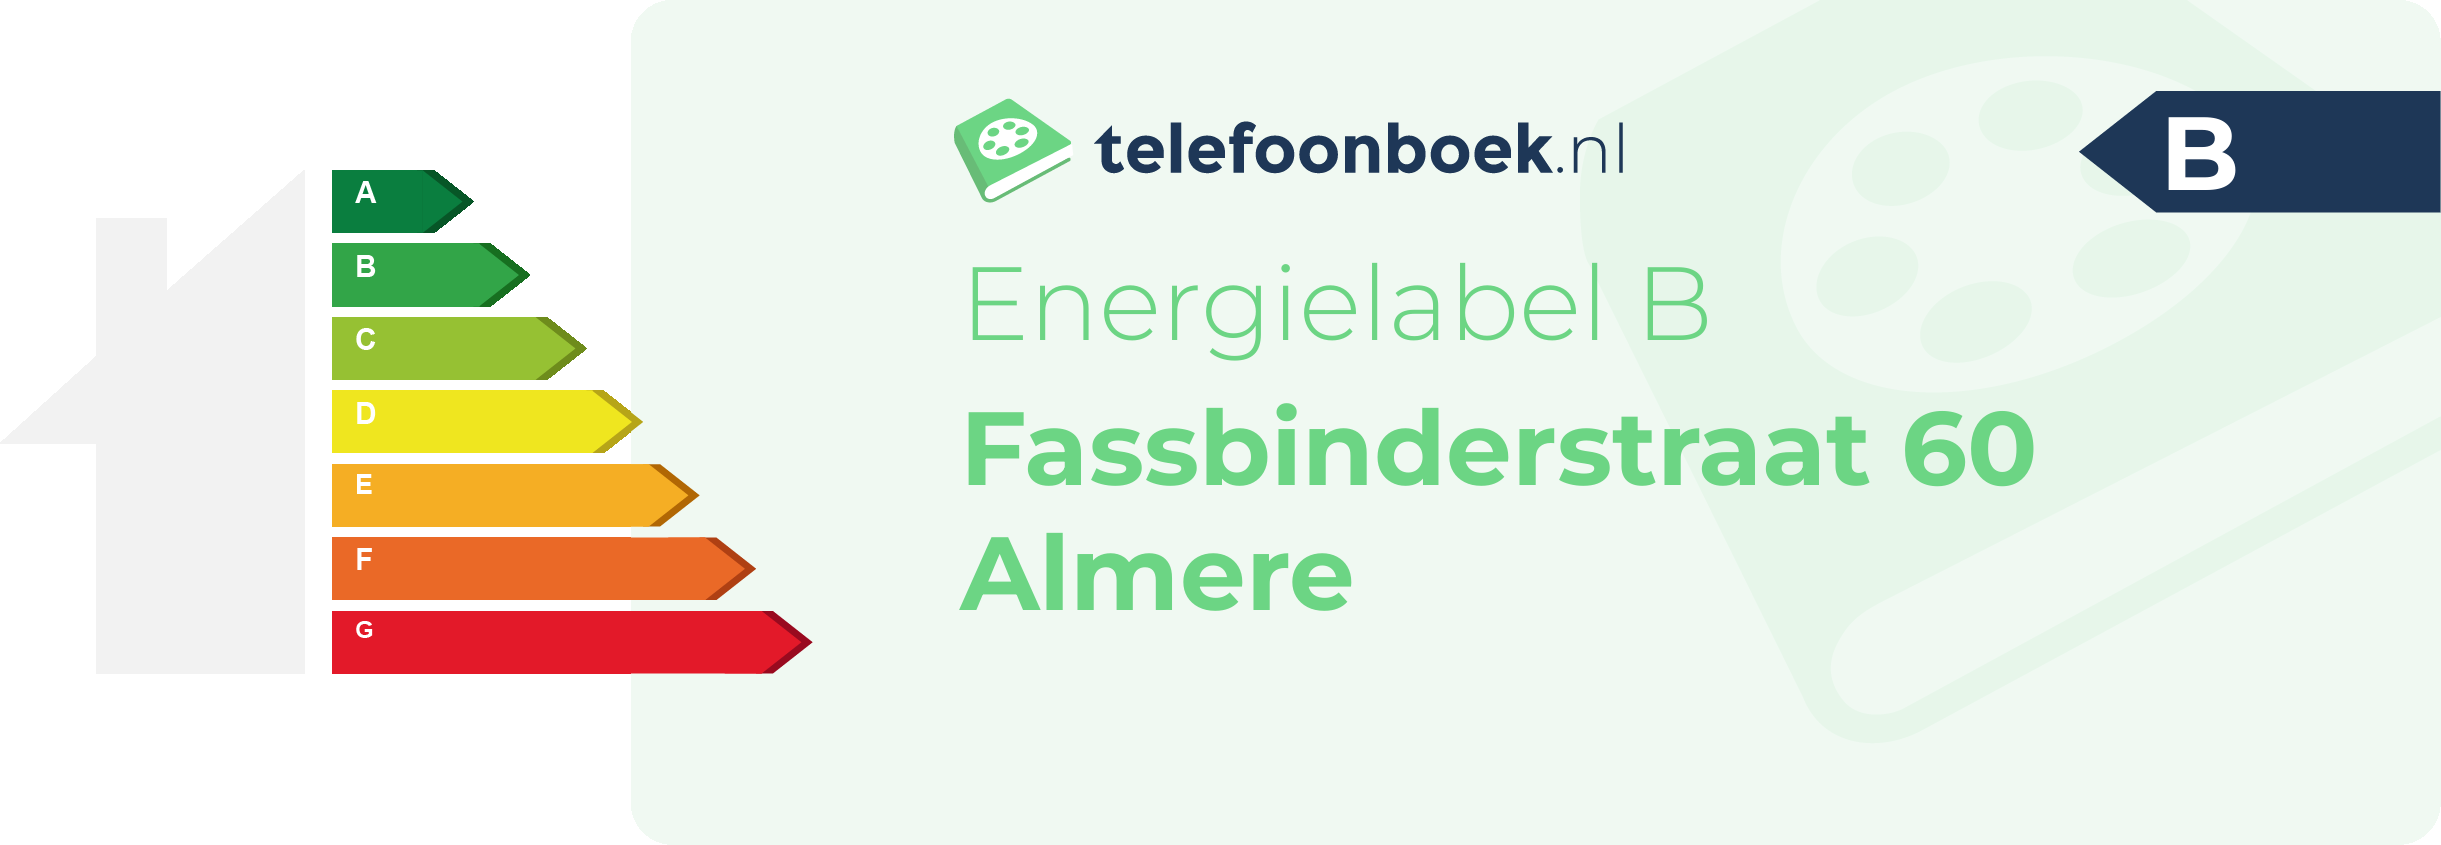 Energielabel Fassbinderstraat 60 Almere